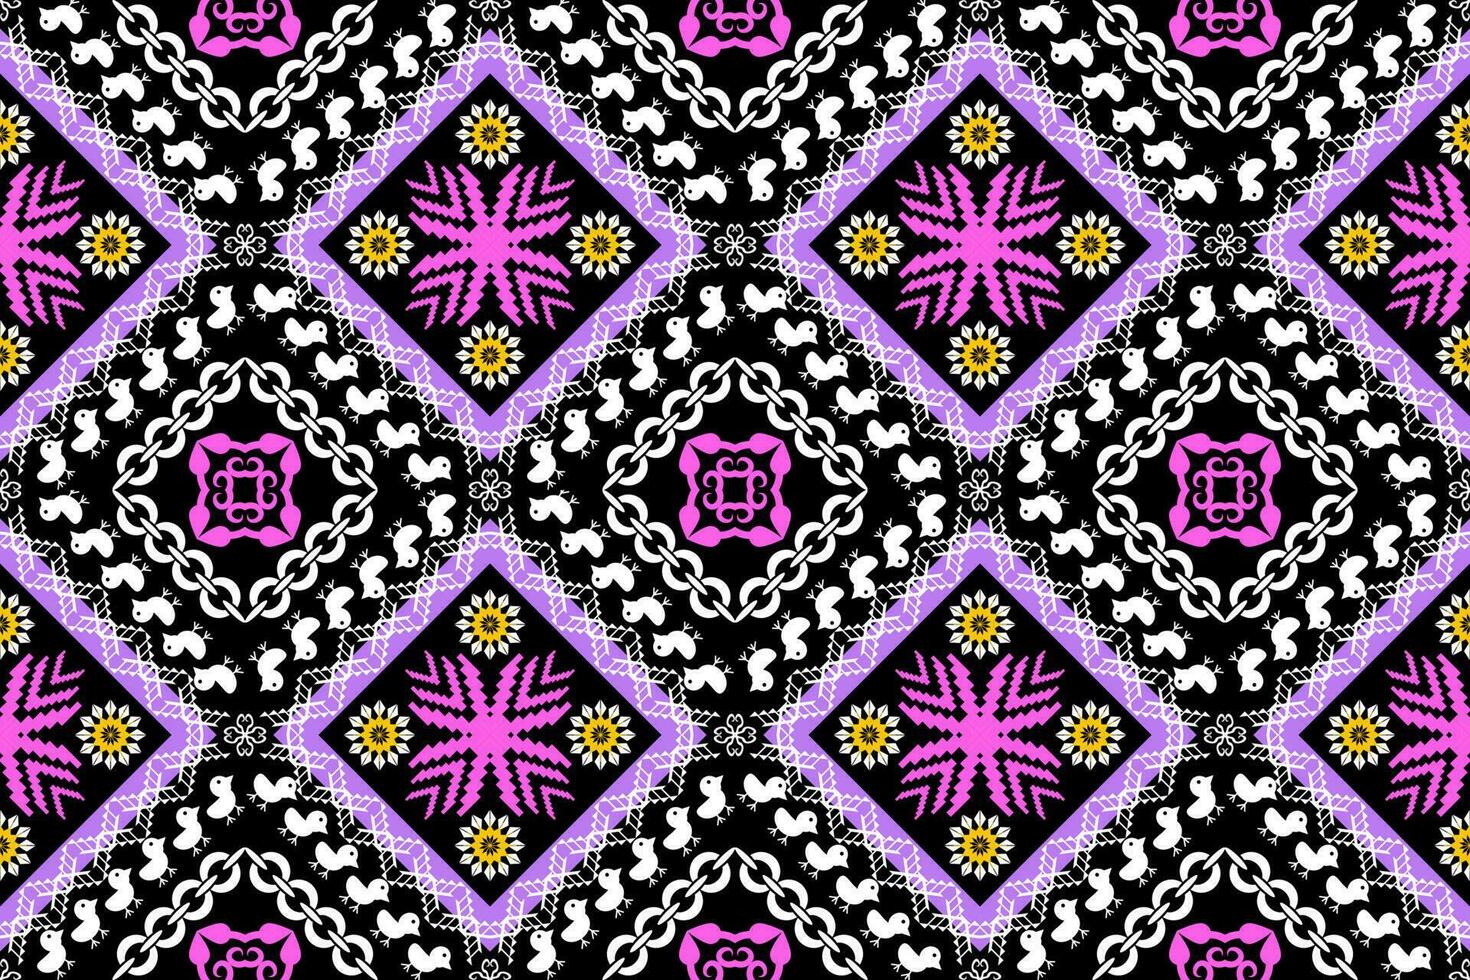 geometrisch ethnisch orientalisch traditionell Kunst Muster.Figur aztekisch Stickerei style.design zum ethnisch hintergrund,tapete,kleidung,verpackung,stoff,element,sarong,vektor Illustration vektor